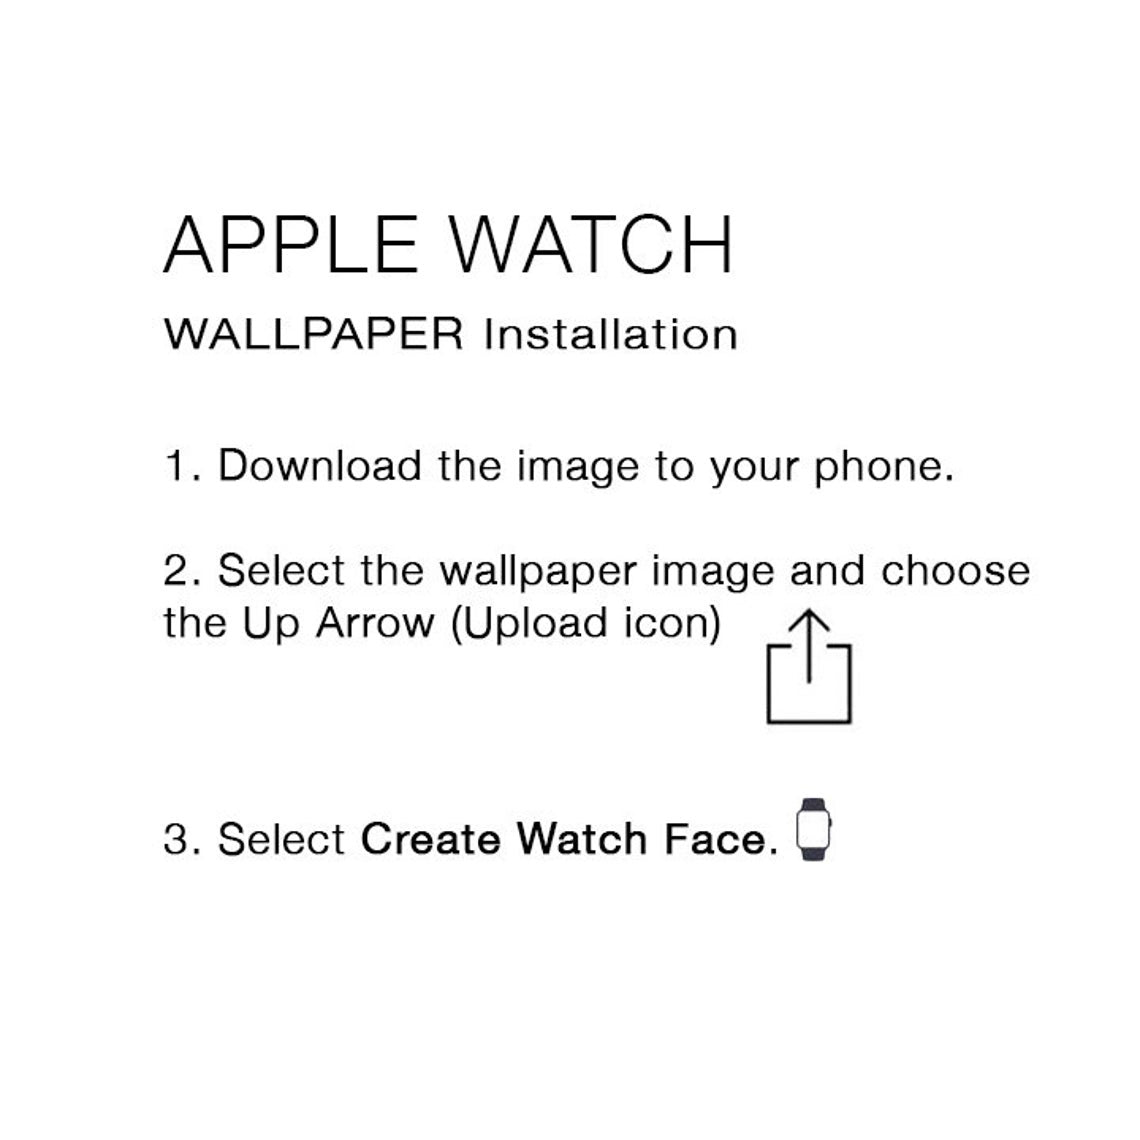 Apple Watch Face Wallpaper Apple Watch Wallpaper Black Apple 